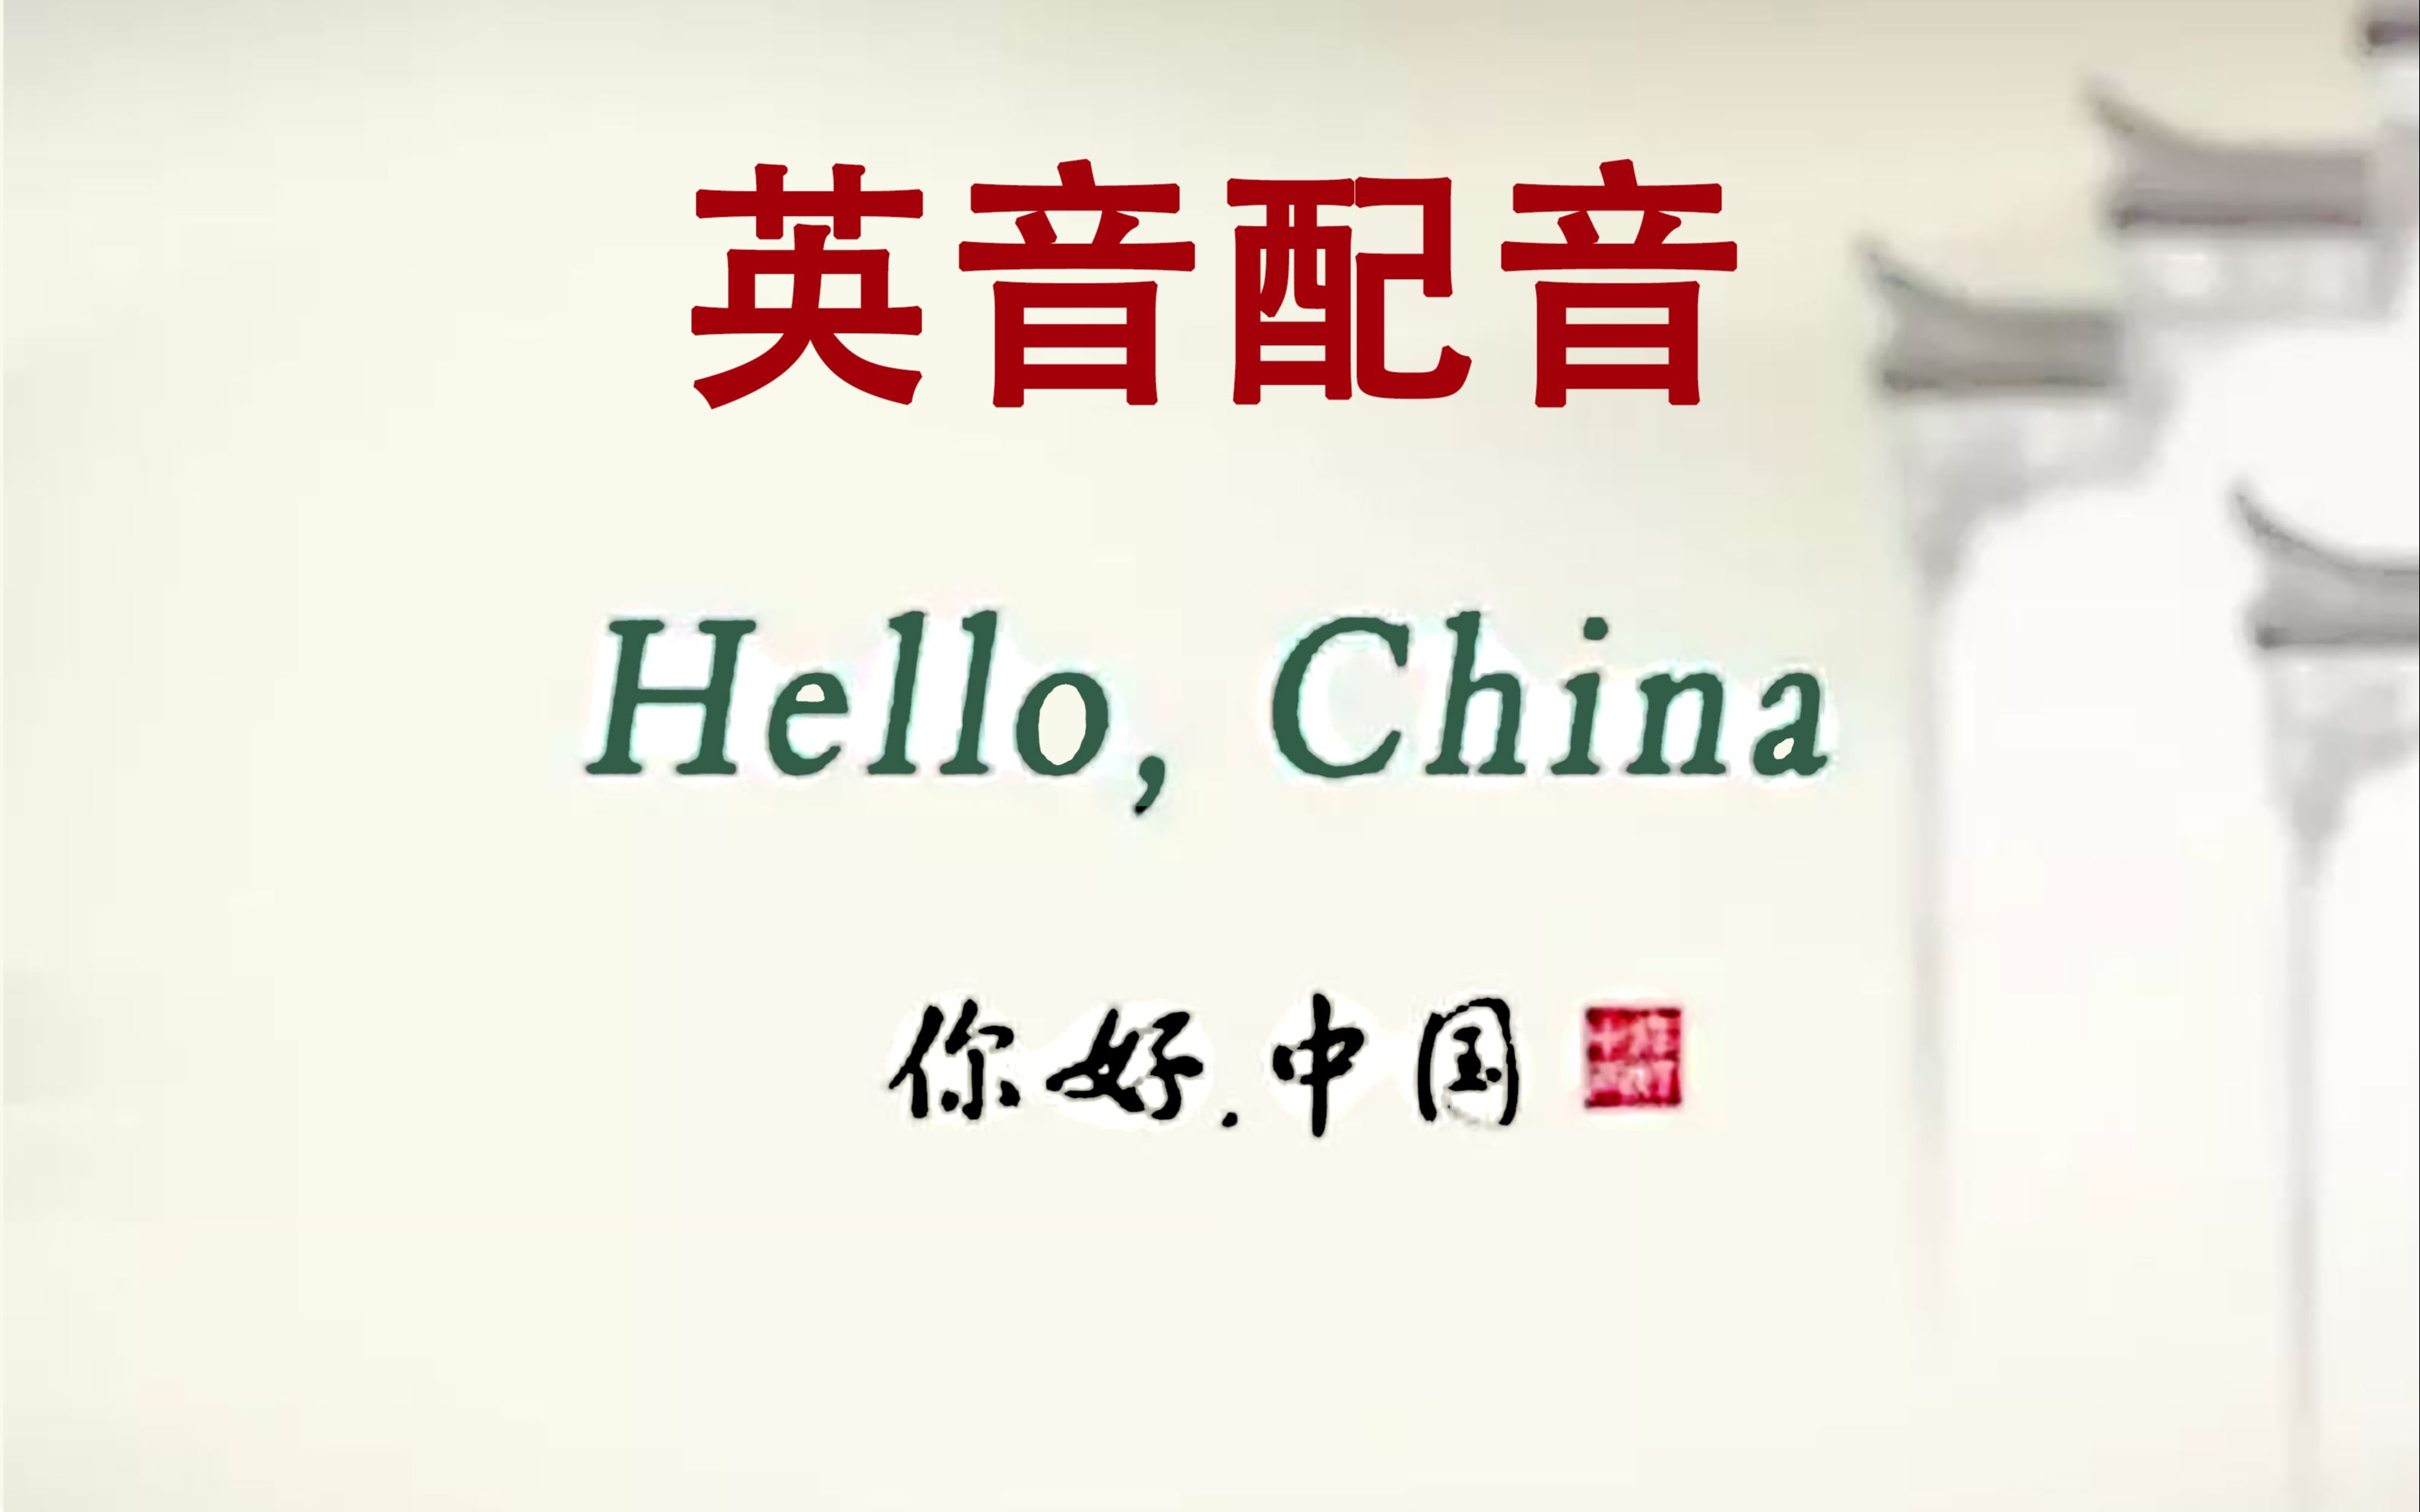 [图]【土楼】Hello China《你好中国》英音配音